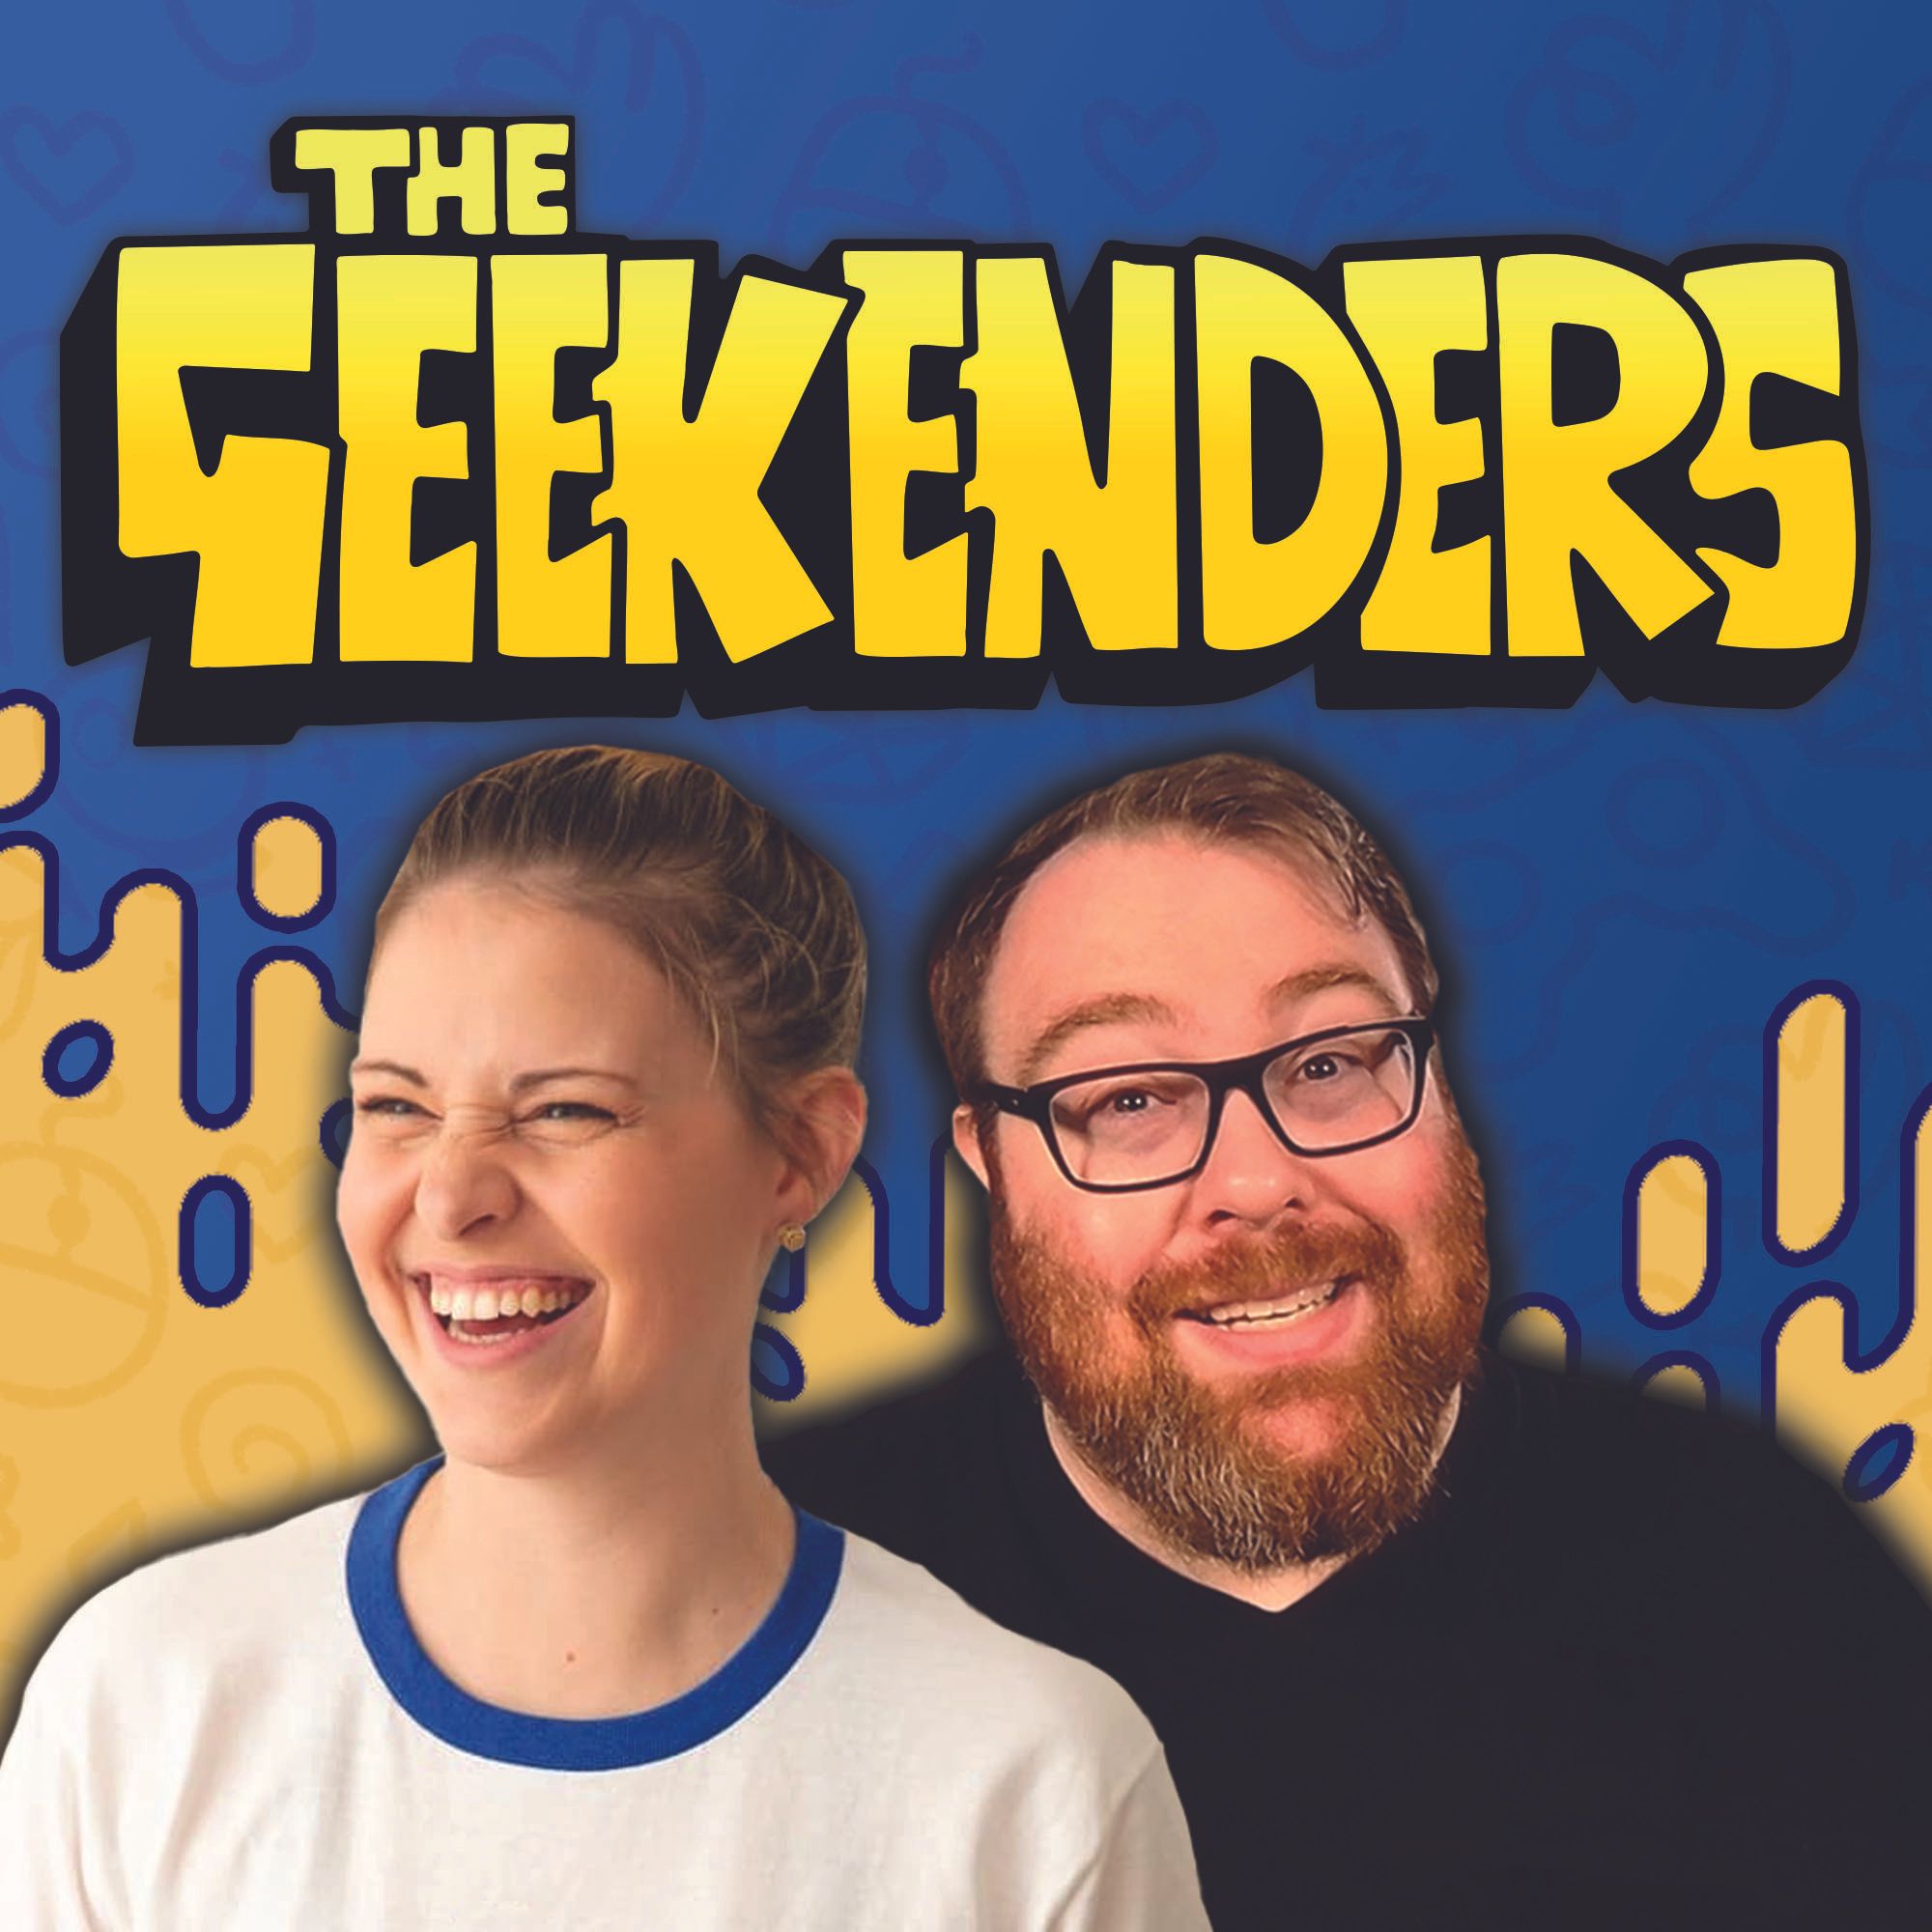 The Geekenders